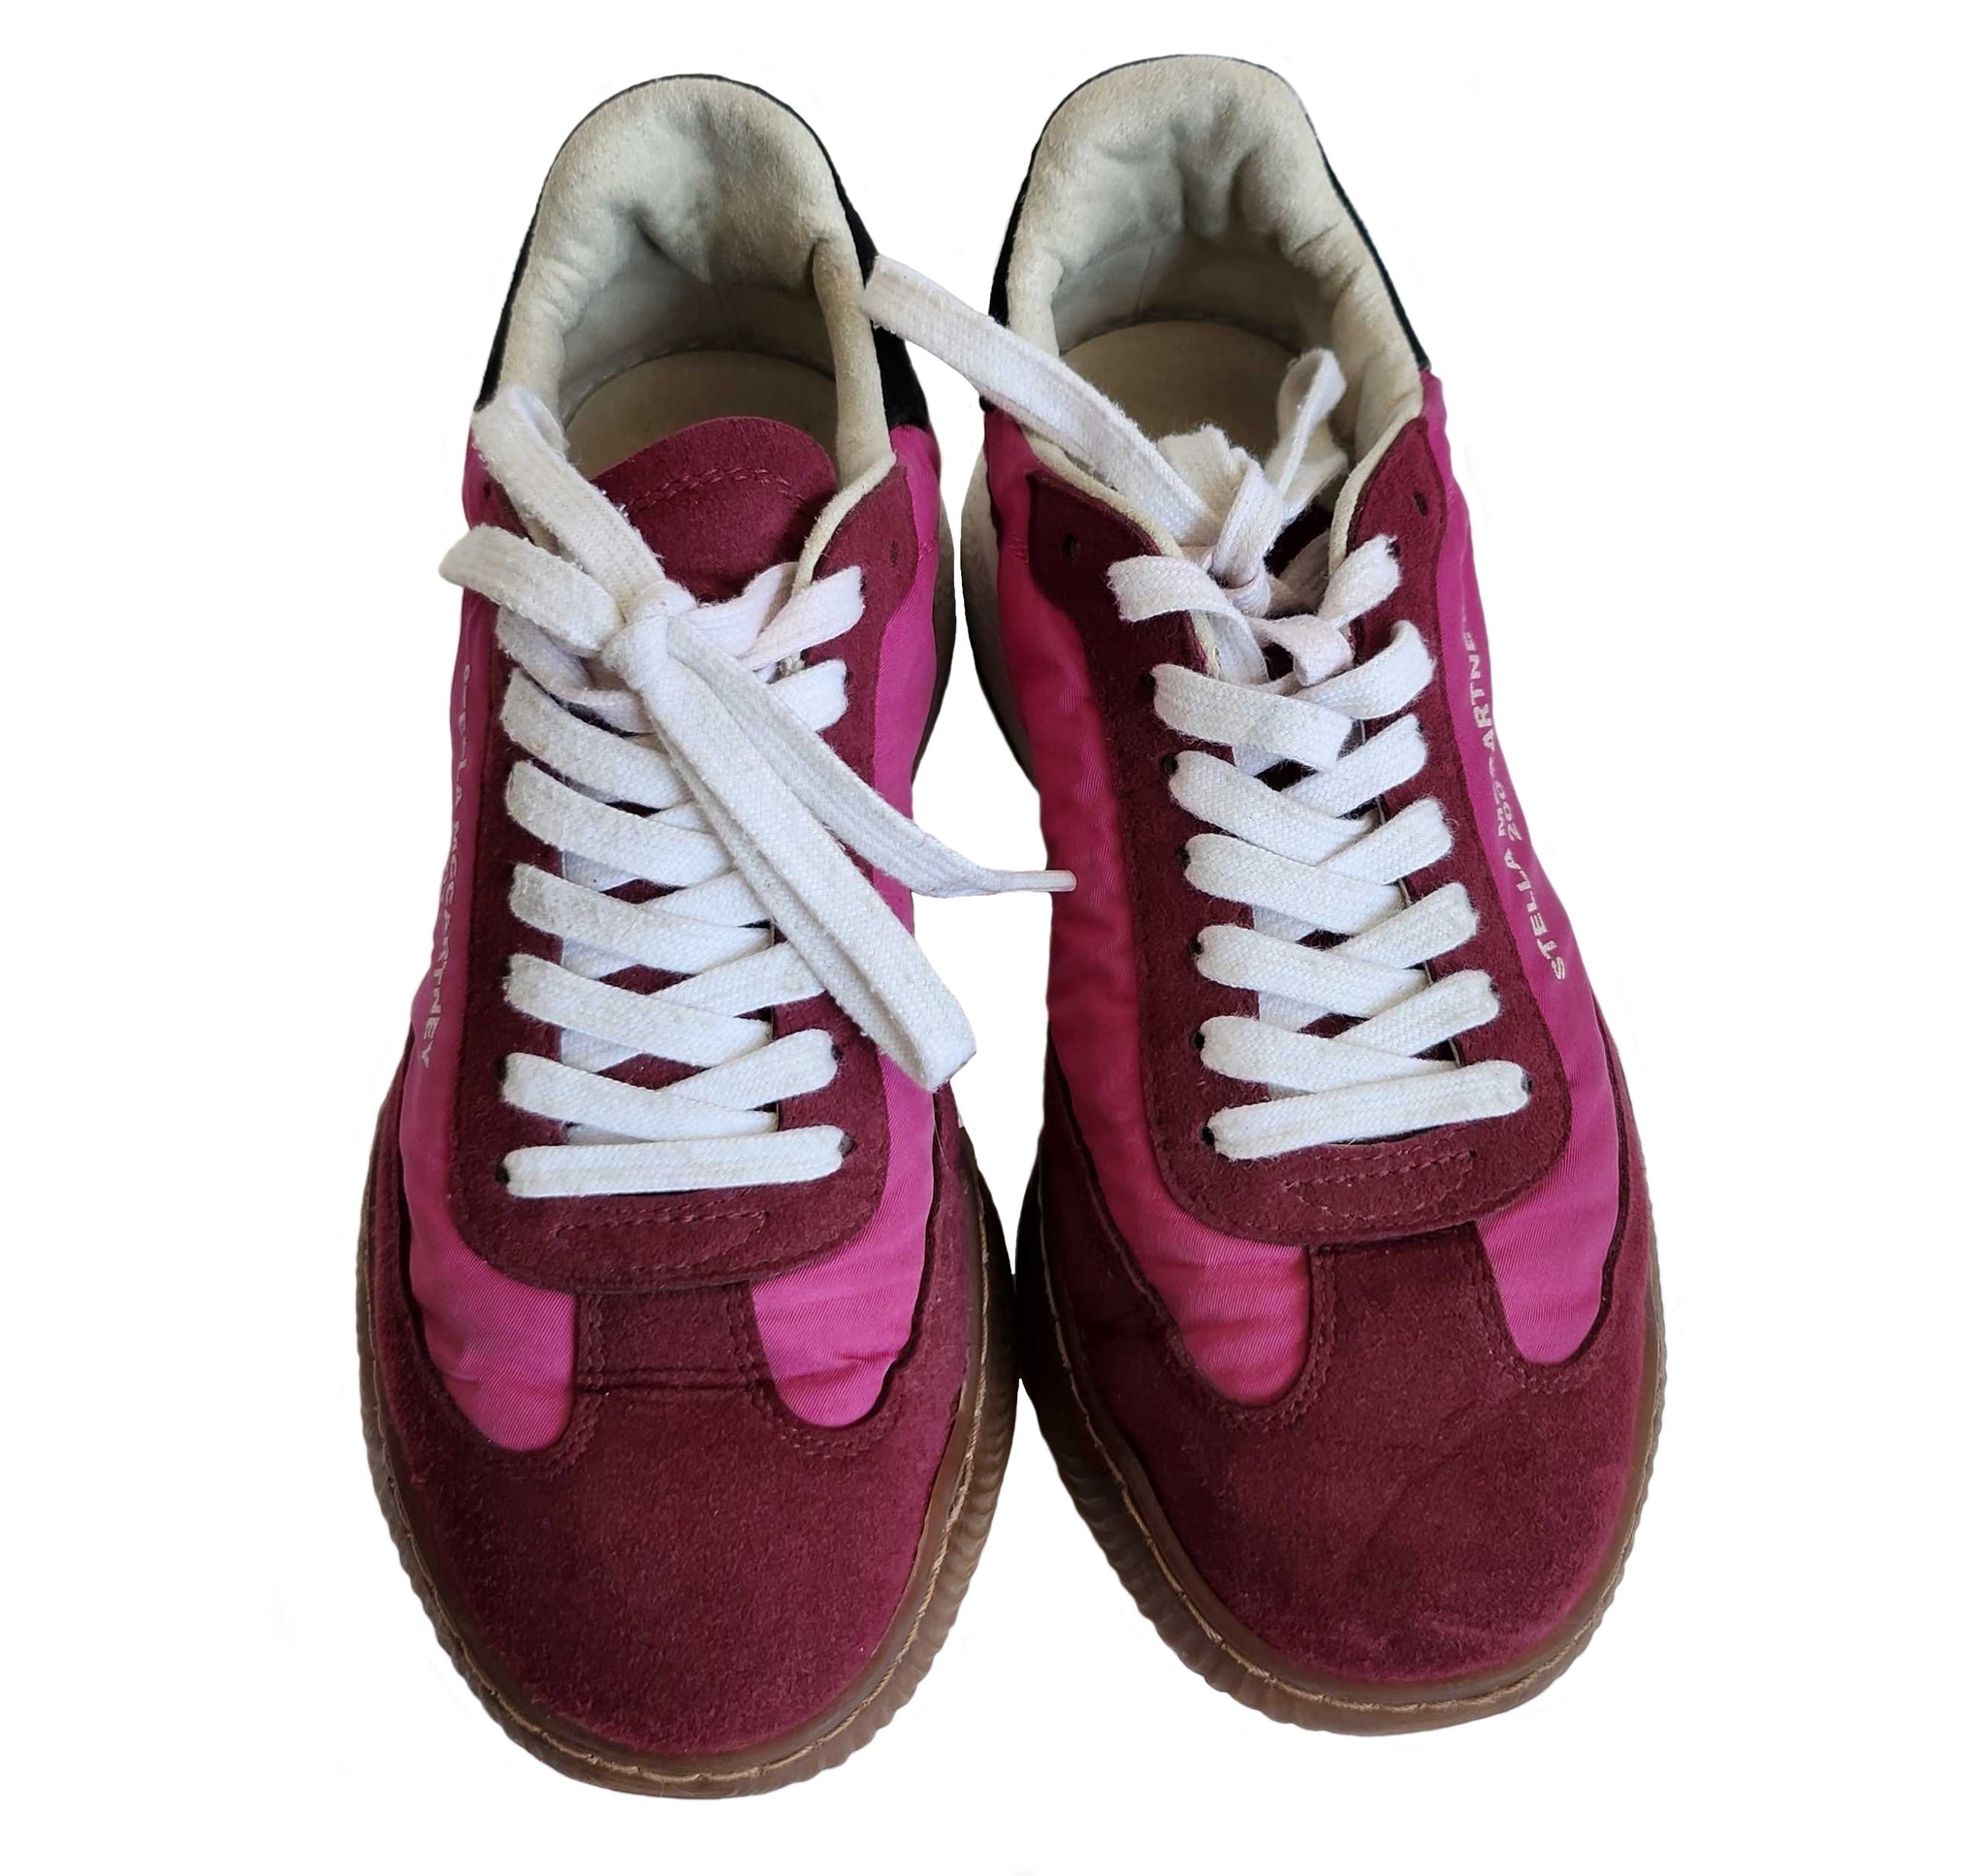 Stella McCartney Women's Loop Platform Sneakers